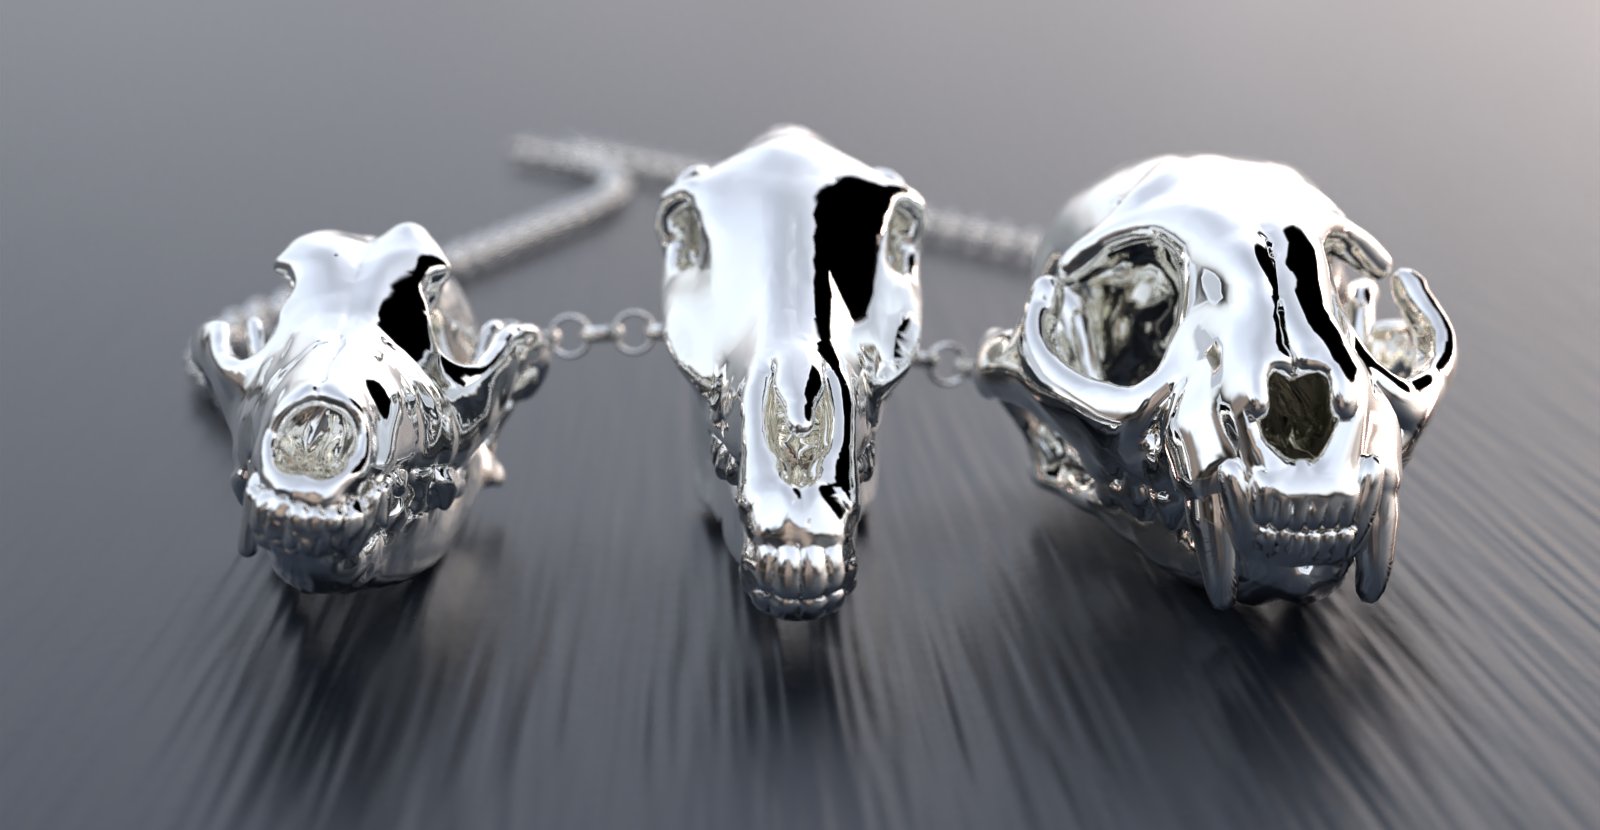 Animal skulls & bones